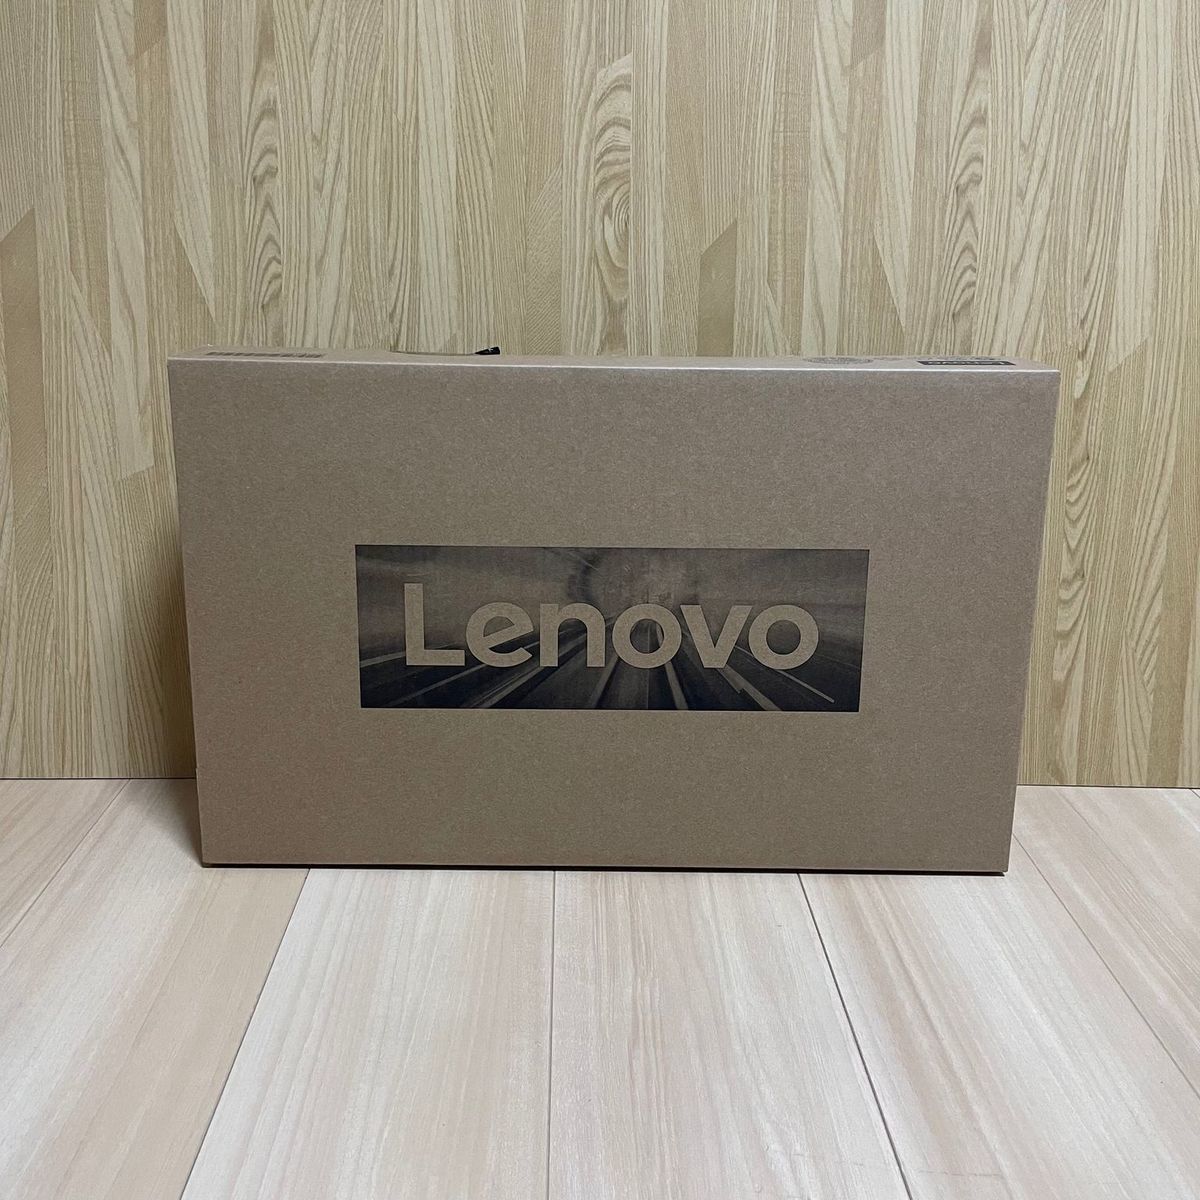 新品 Office2021付 Lenovo IdeaPad Slim 170 15.6型 FHD IPS / Ryzen 7 5700U / 16GB メモリー / 512GB SSD / 追加オプション可能の画像8